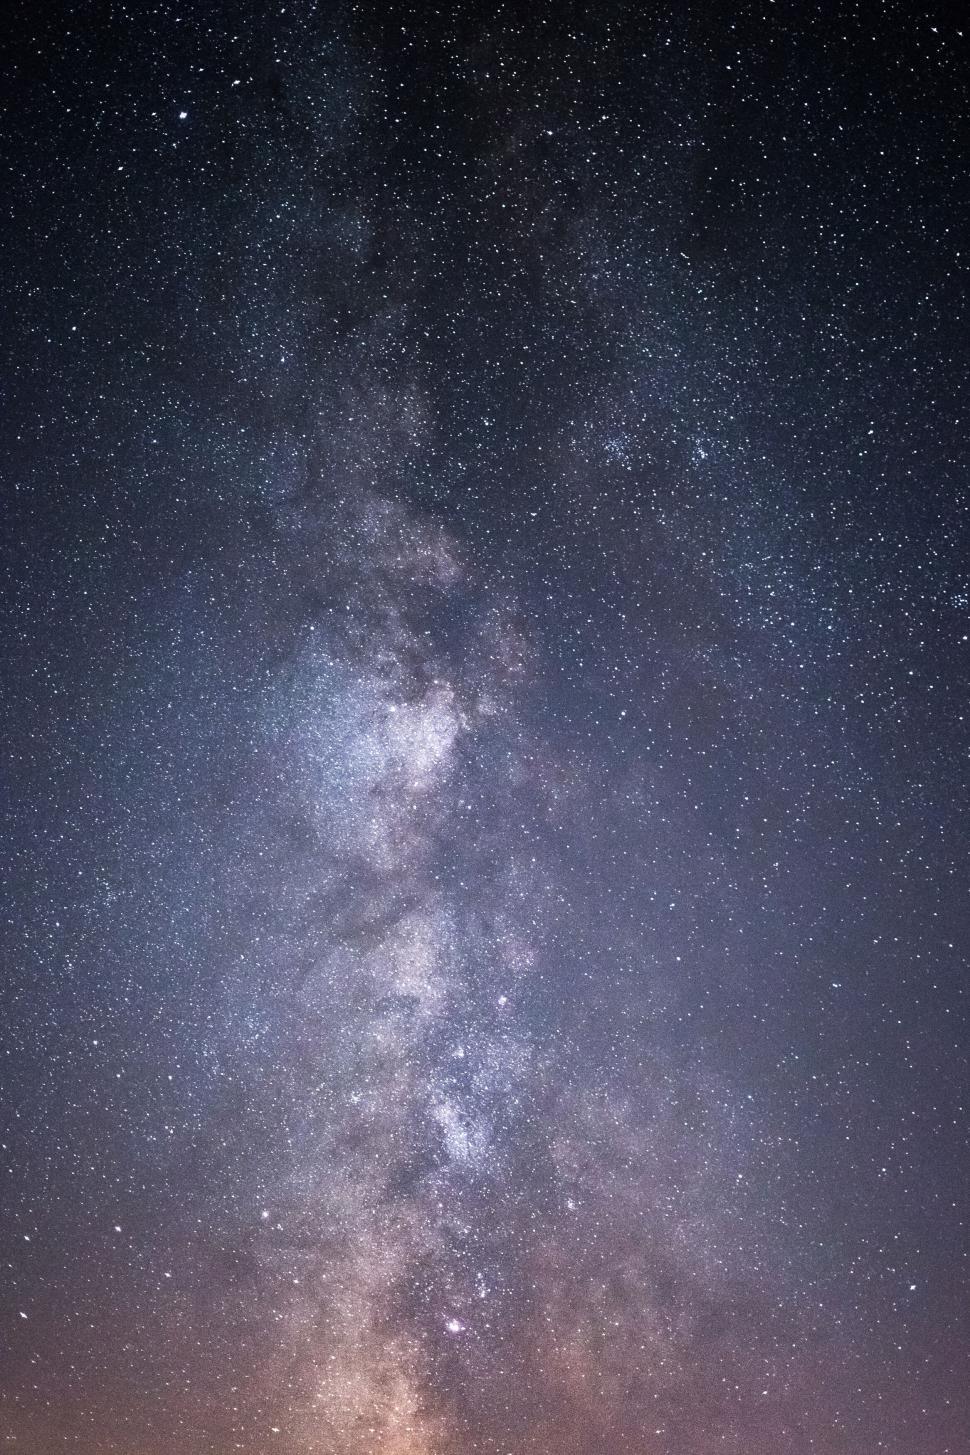 Free Image of Vertical Milky Way against the dark sky 